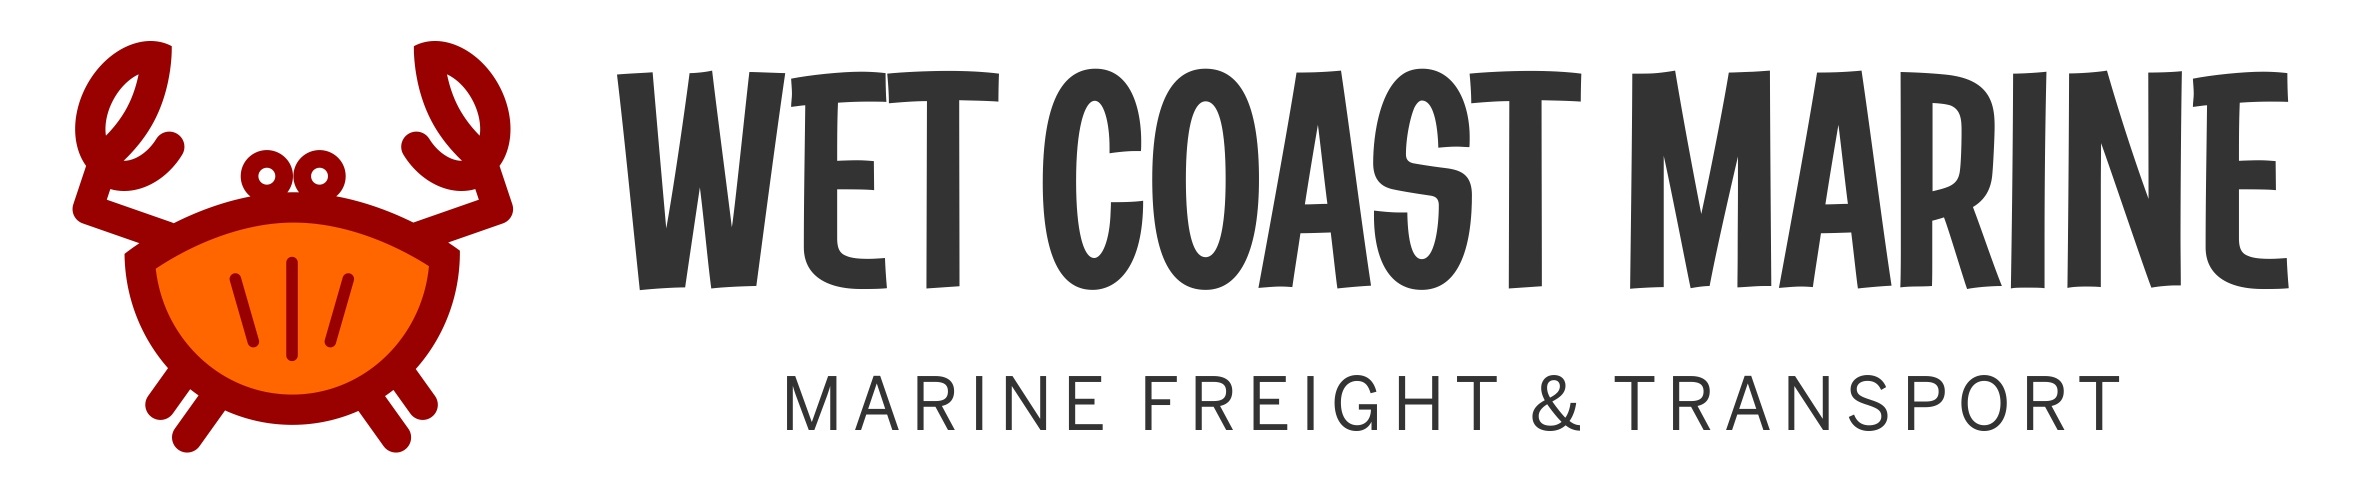 Wet Coast Marine Logo